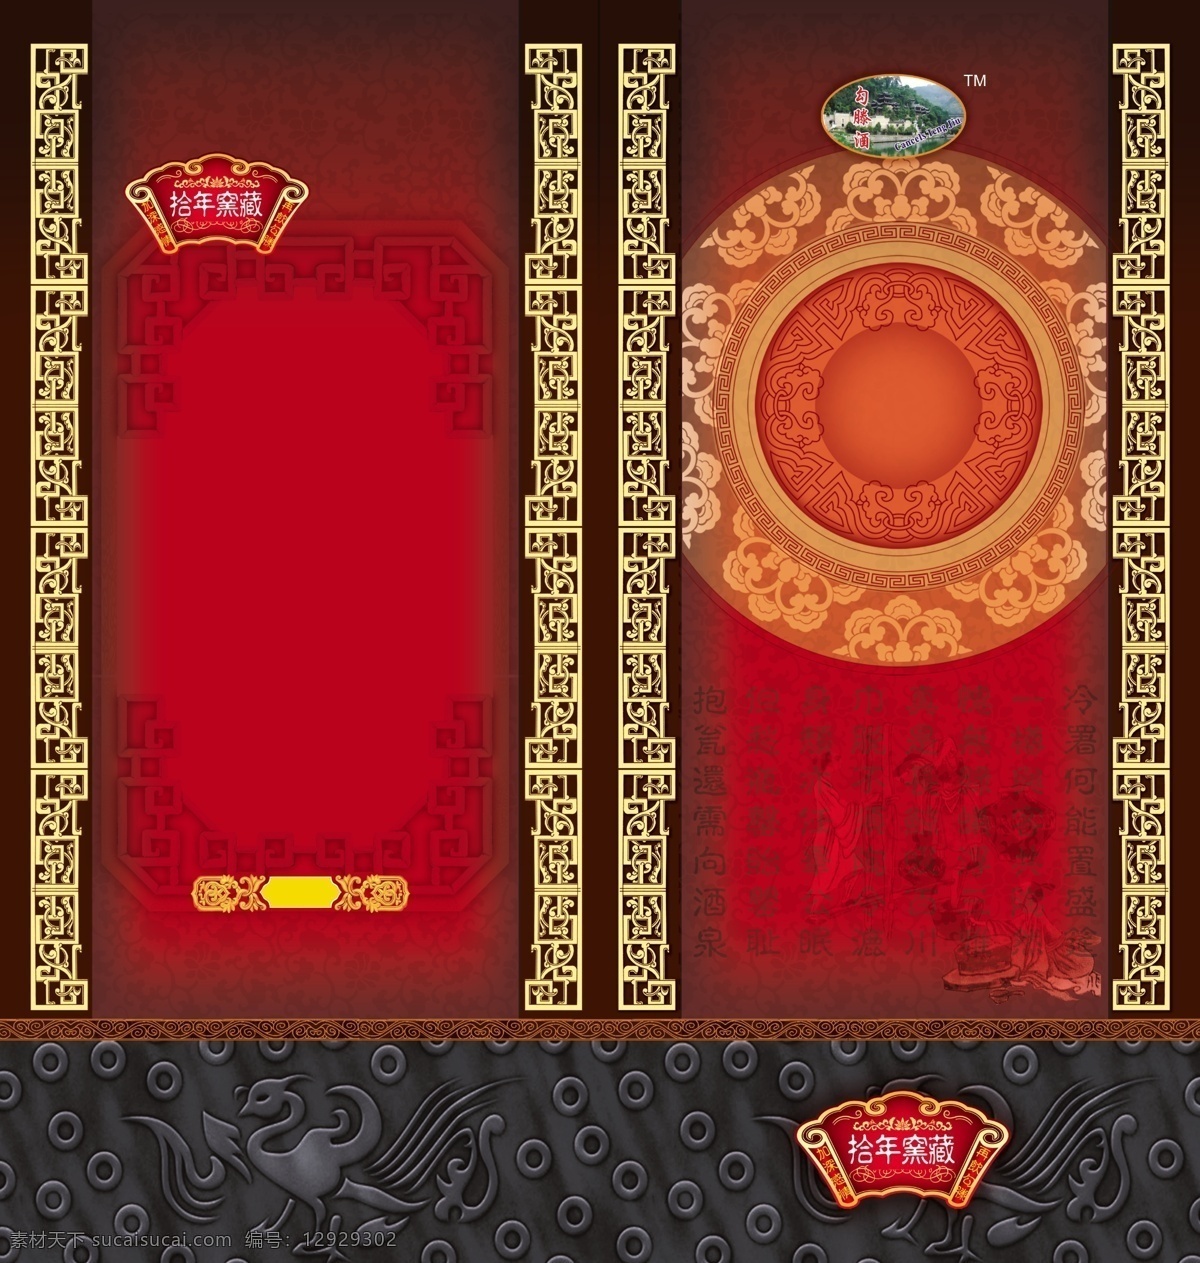 酒品包装 包装模板 分层素材 设计素材 烟酒包装 psd源文件 红色